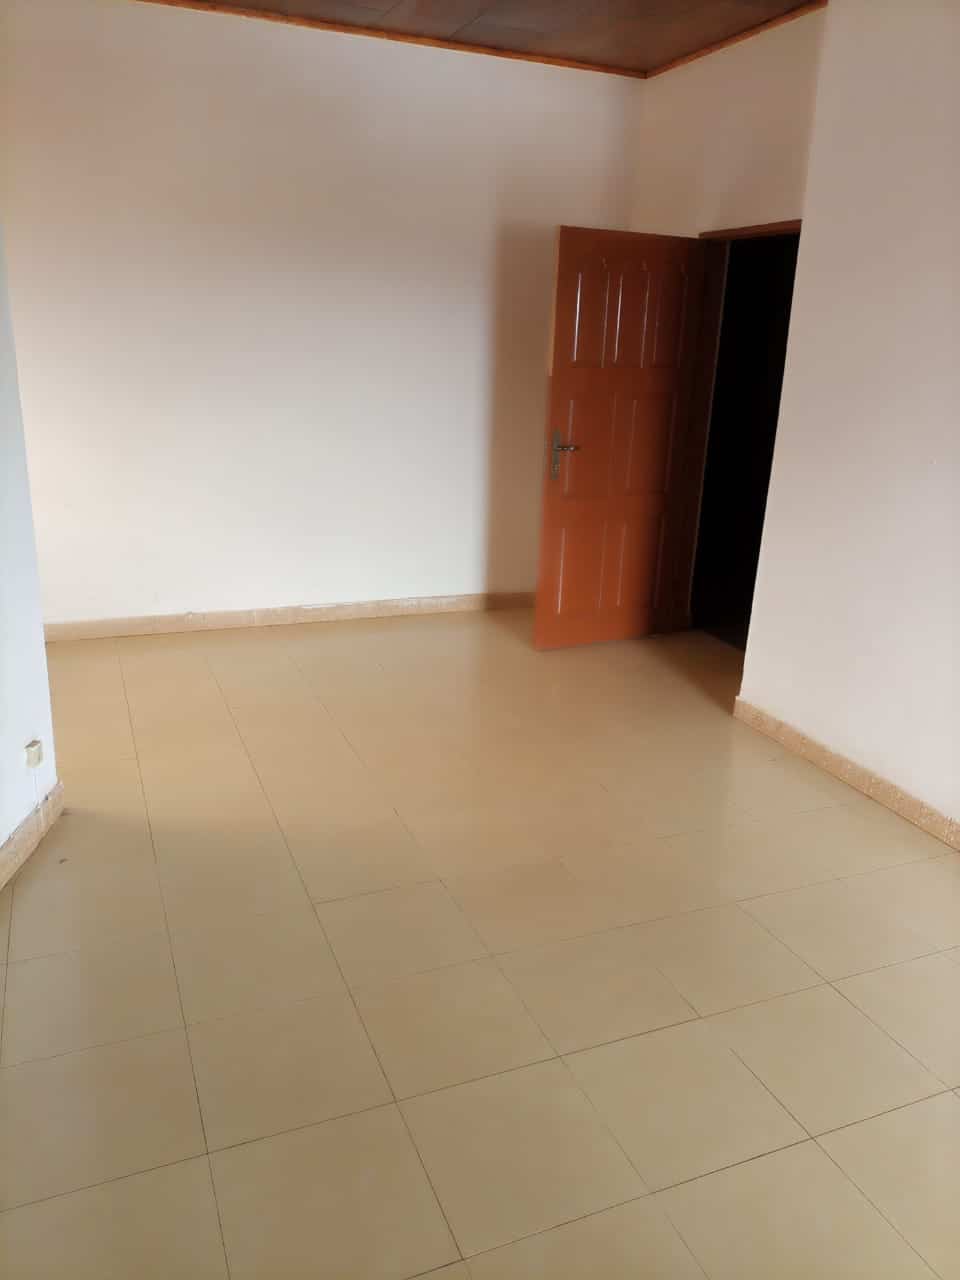 House (Duplex) for sale - Yaoundé, Bastos, Palais de congrès - 2 living room(s), 6 bedroom(s), 7 bathroom(s) - 500 000 000 FCFA / month